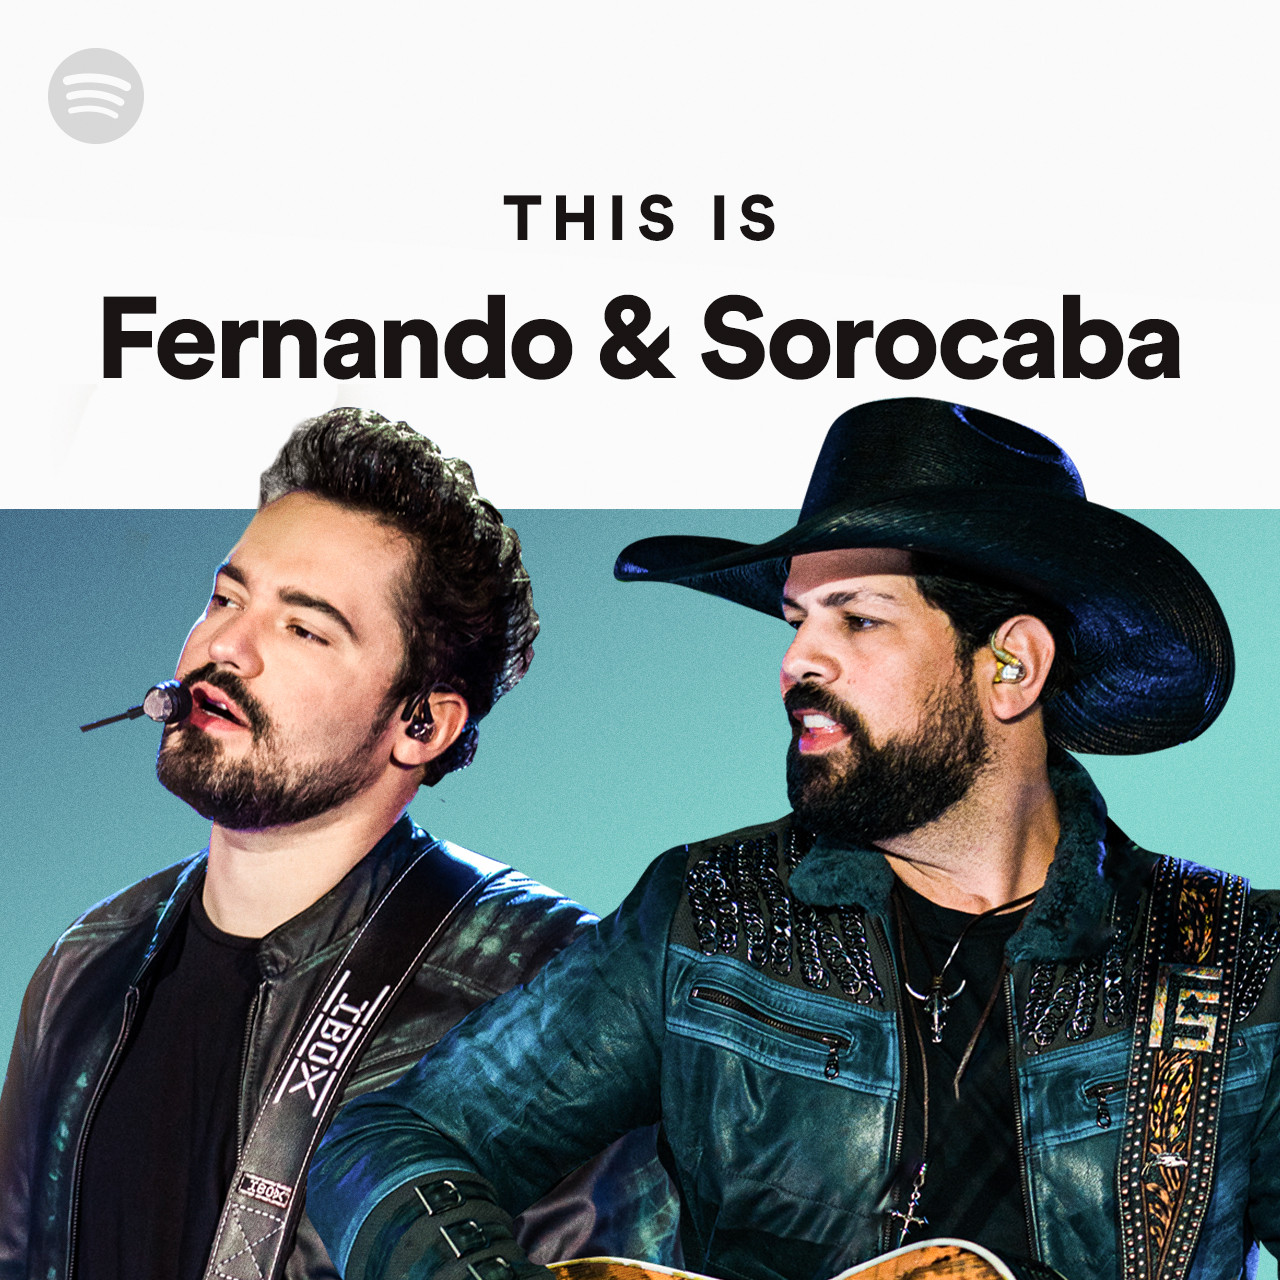 Fernando e Sorocaba - Passando pra agradecer o time do Spotify e da Sony  Music pela tarde especial que tivemos hoje na sede do Spotify, em São  Paulo. Muito bom poder compartilhar